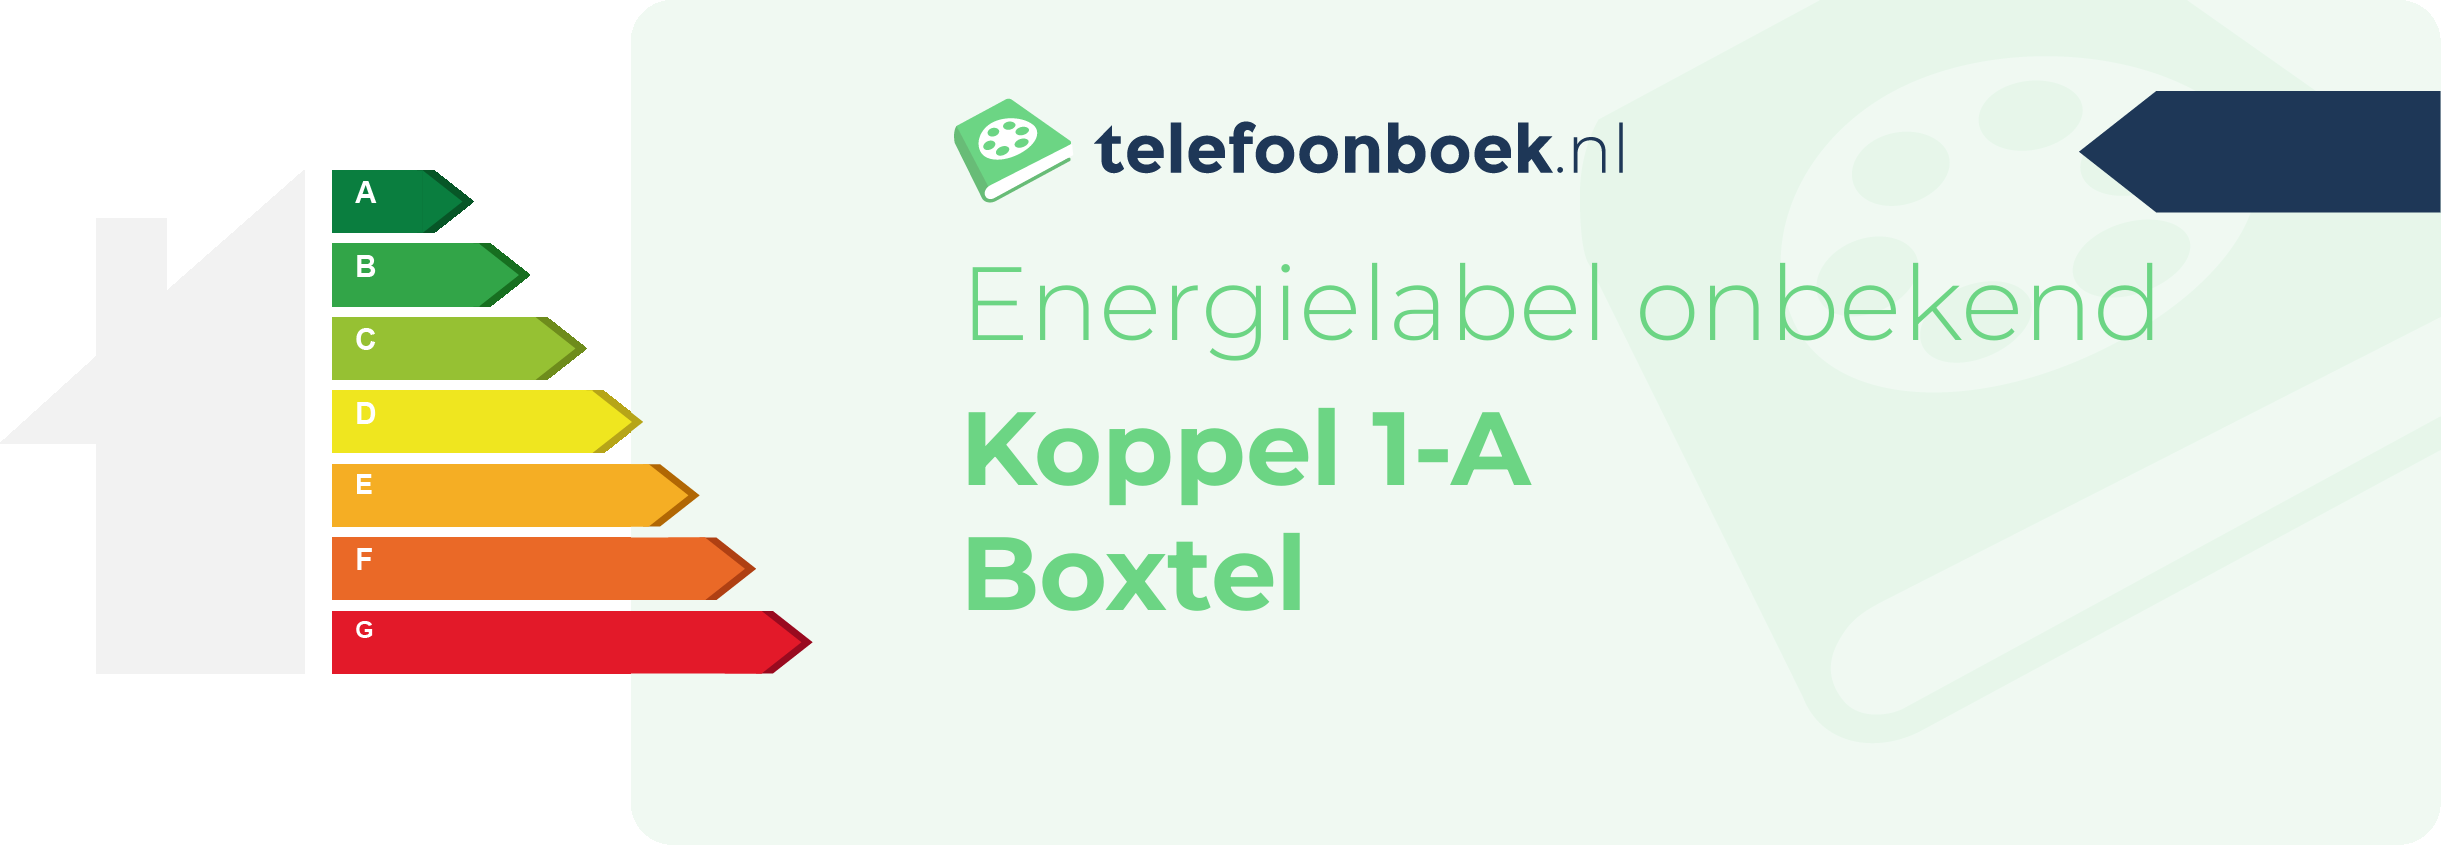 Energielabel Koppel 1-A Boxtel